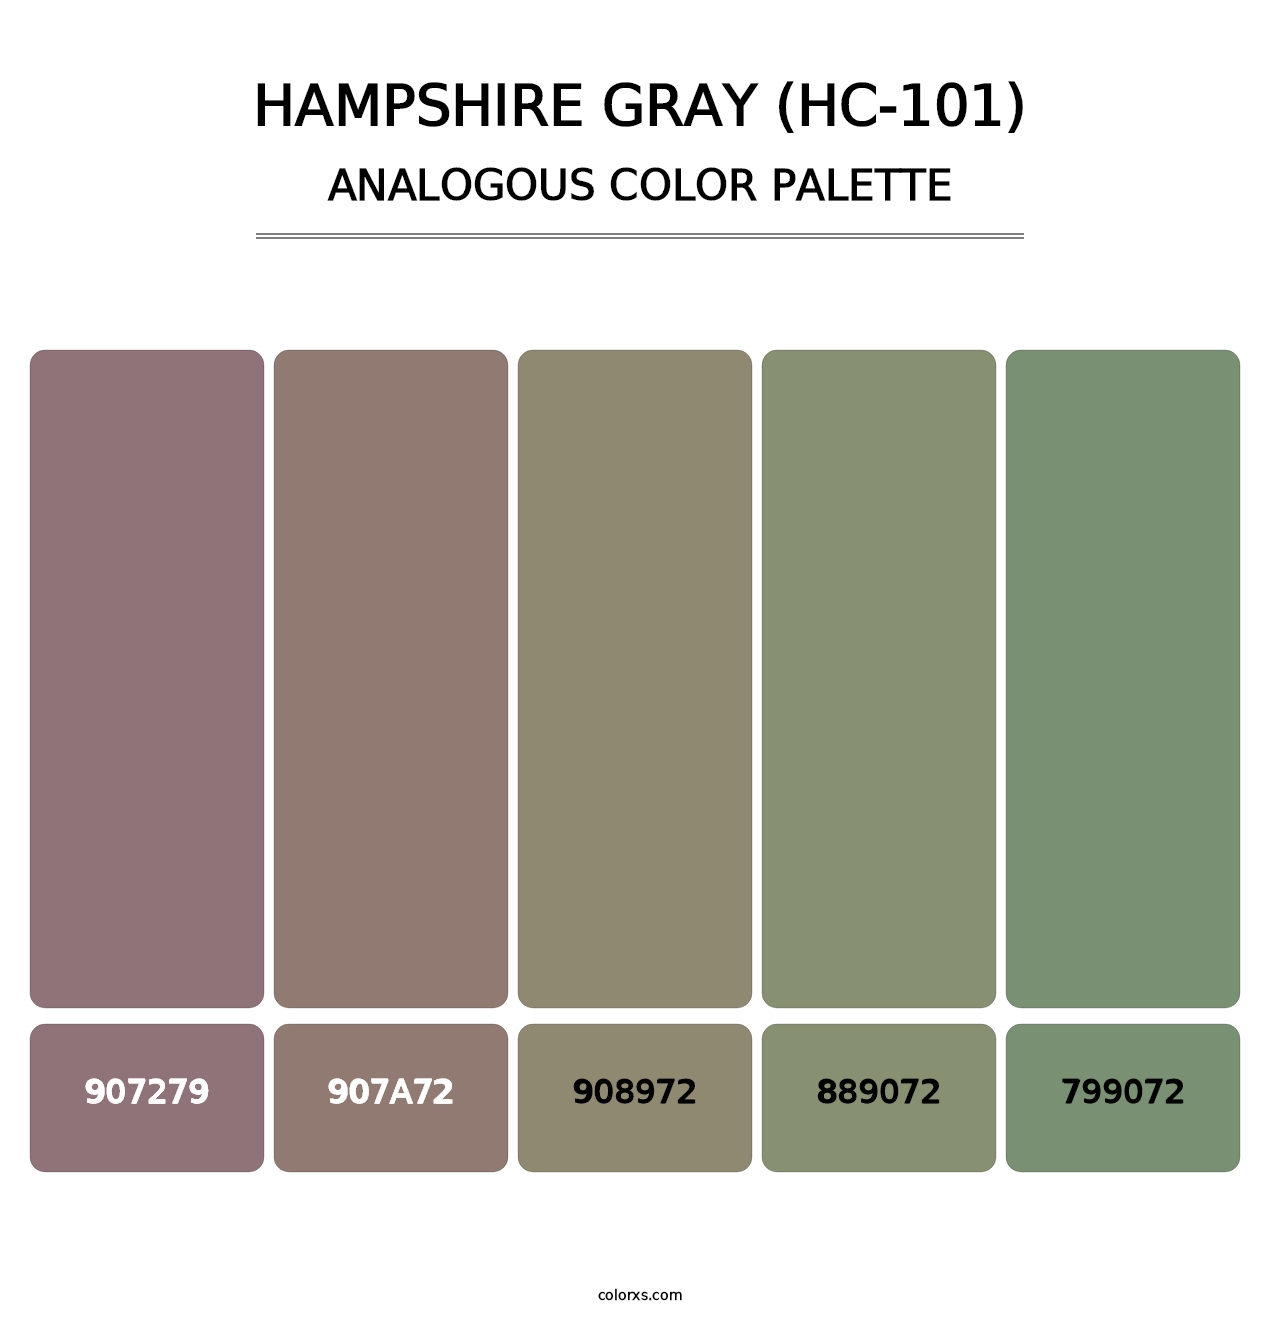 Hampshire Gray (HC-101) - Analogous Color Palette